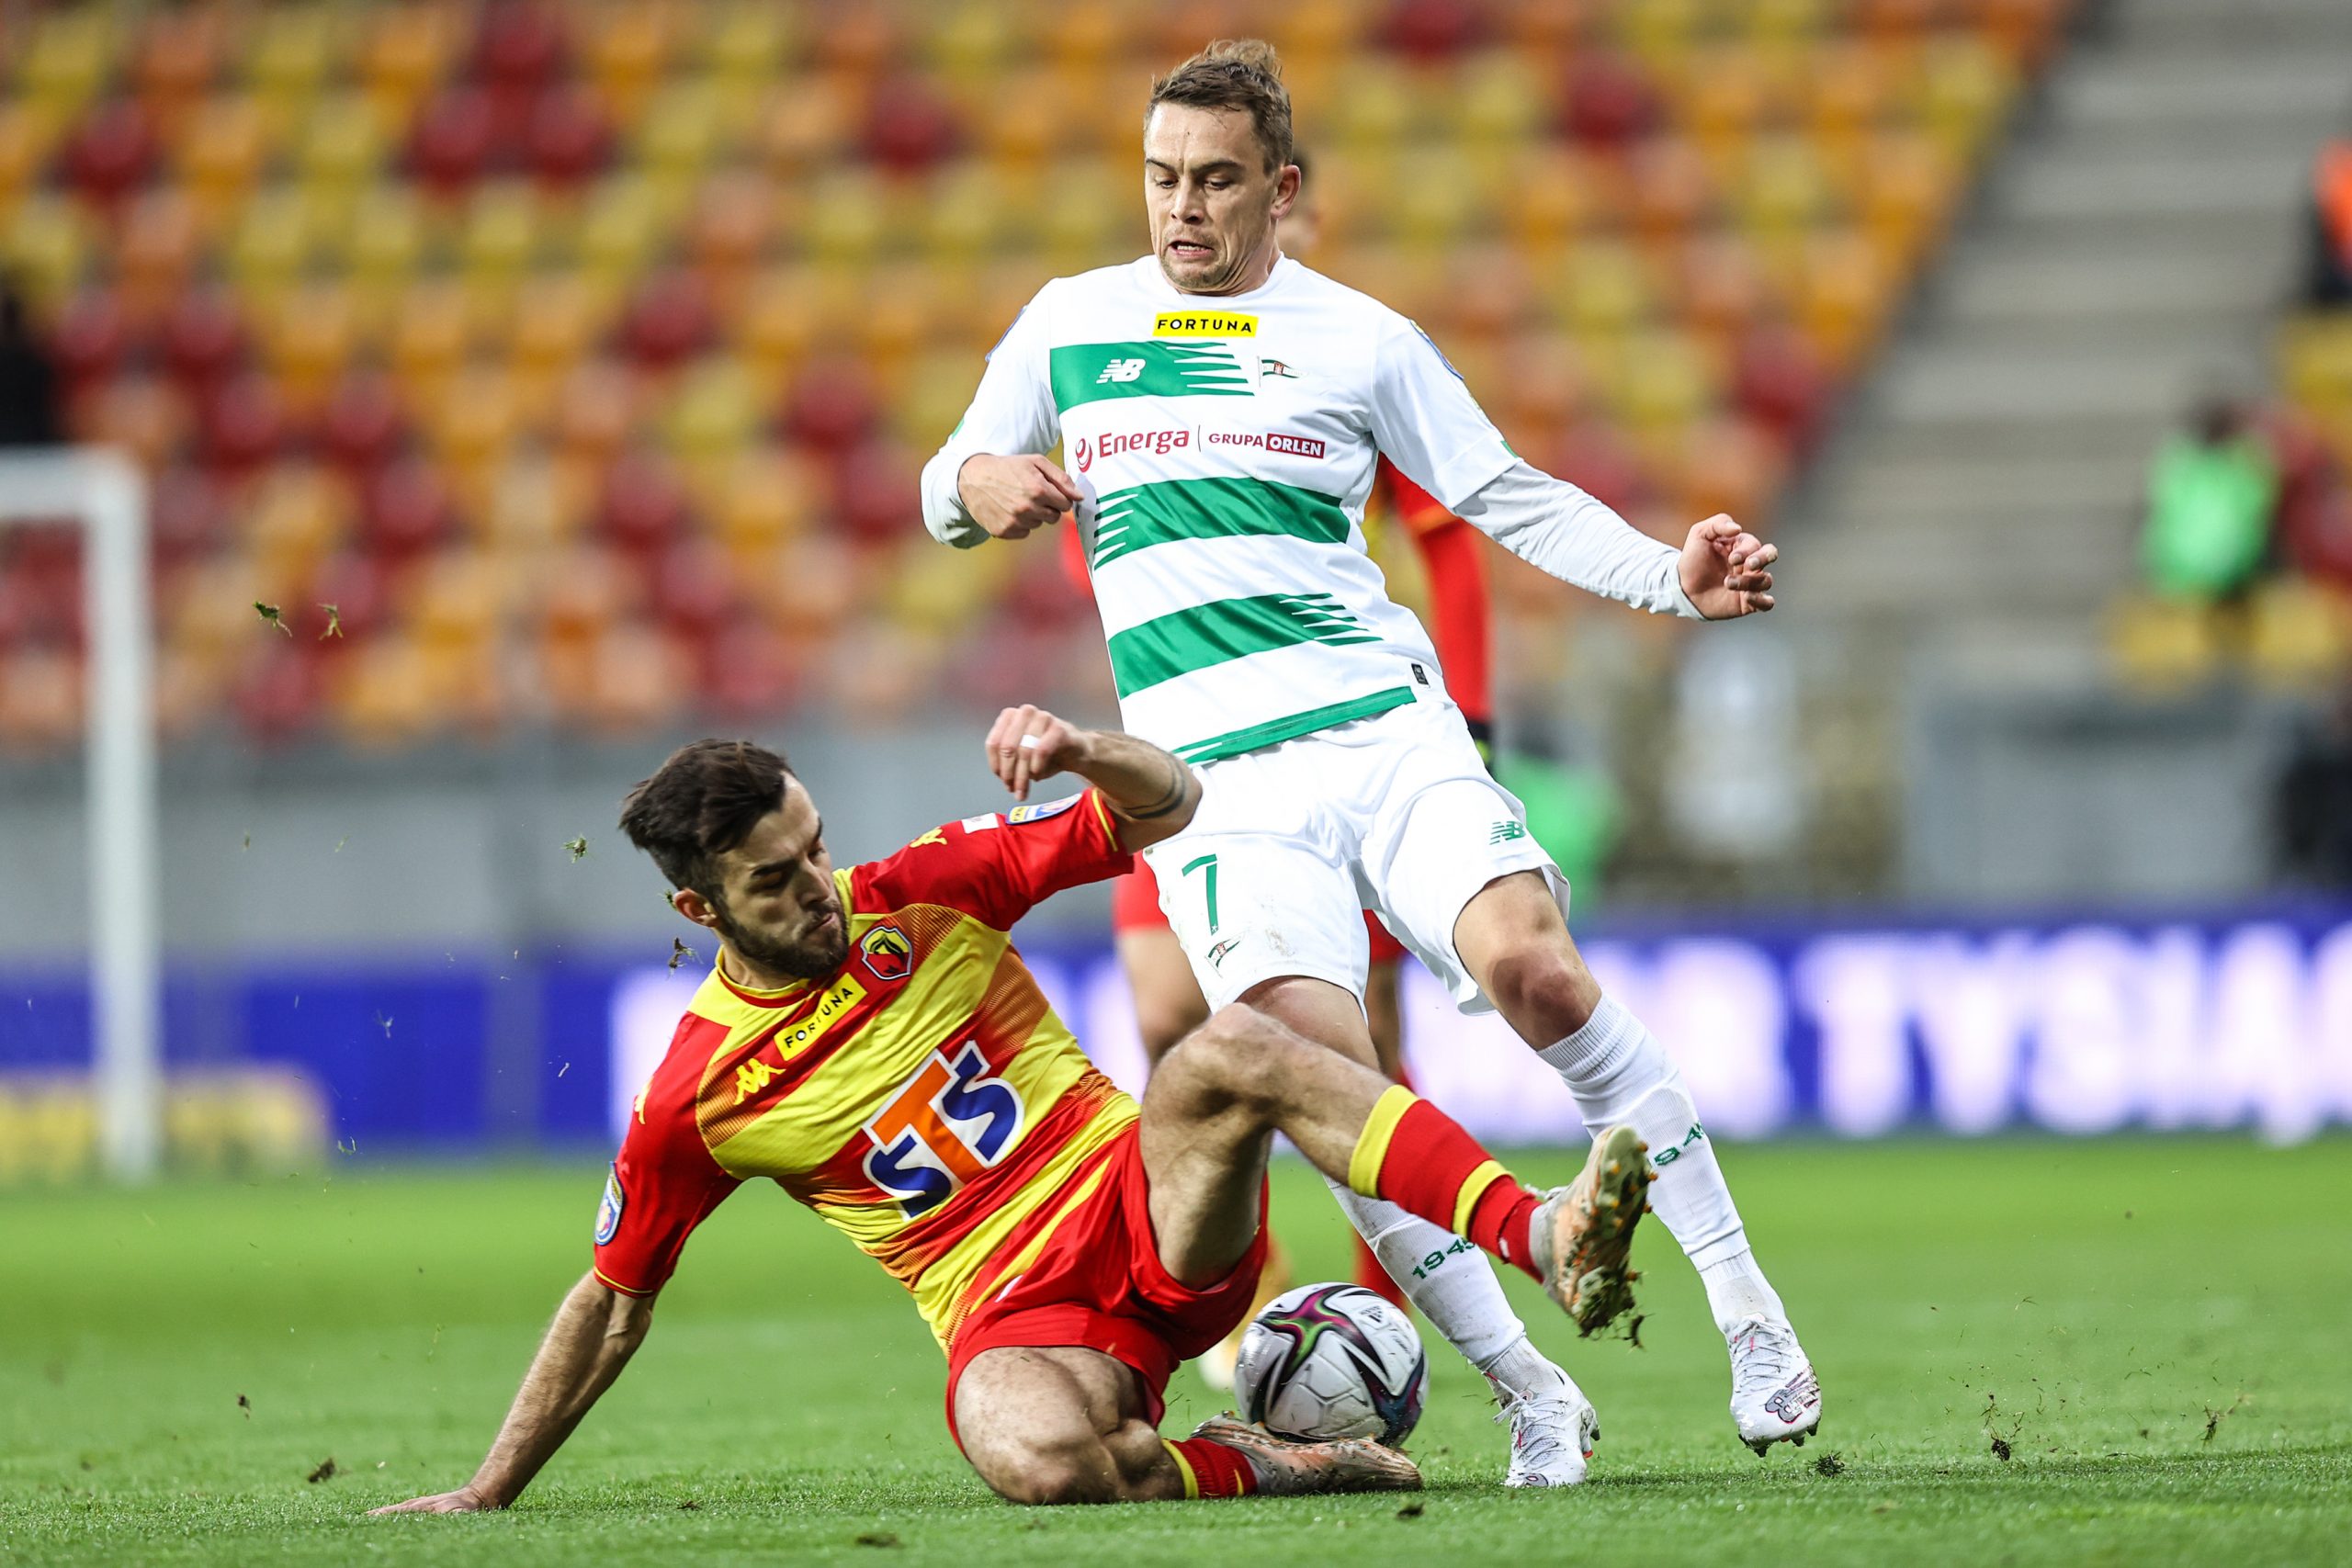 Na murawie siedzi piłkarz w żółto - czerwonym stroju i próbuje wybić piłkę zawodnikowi w biało - zielonym stroju, który stoi nad nim